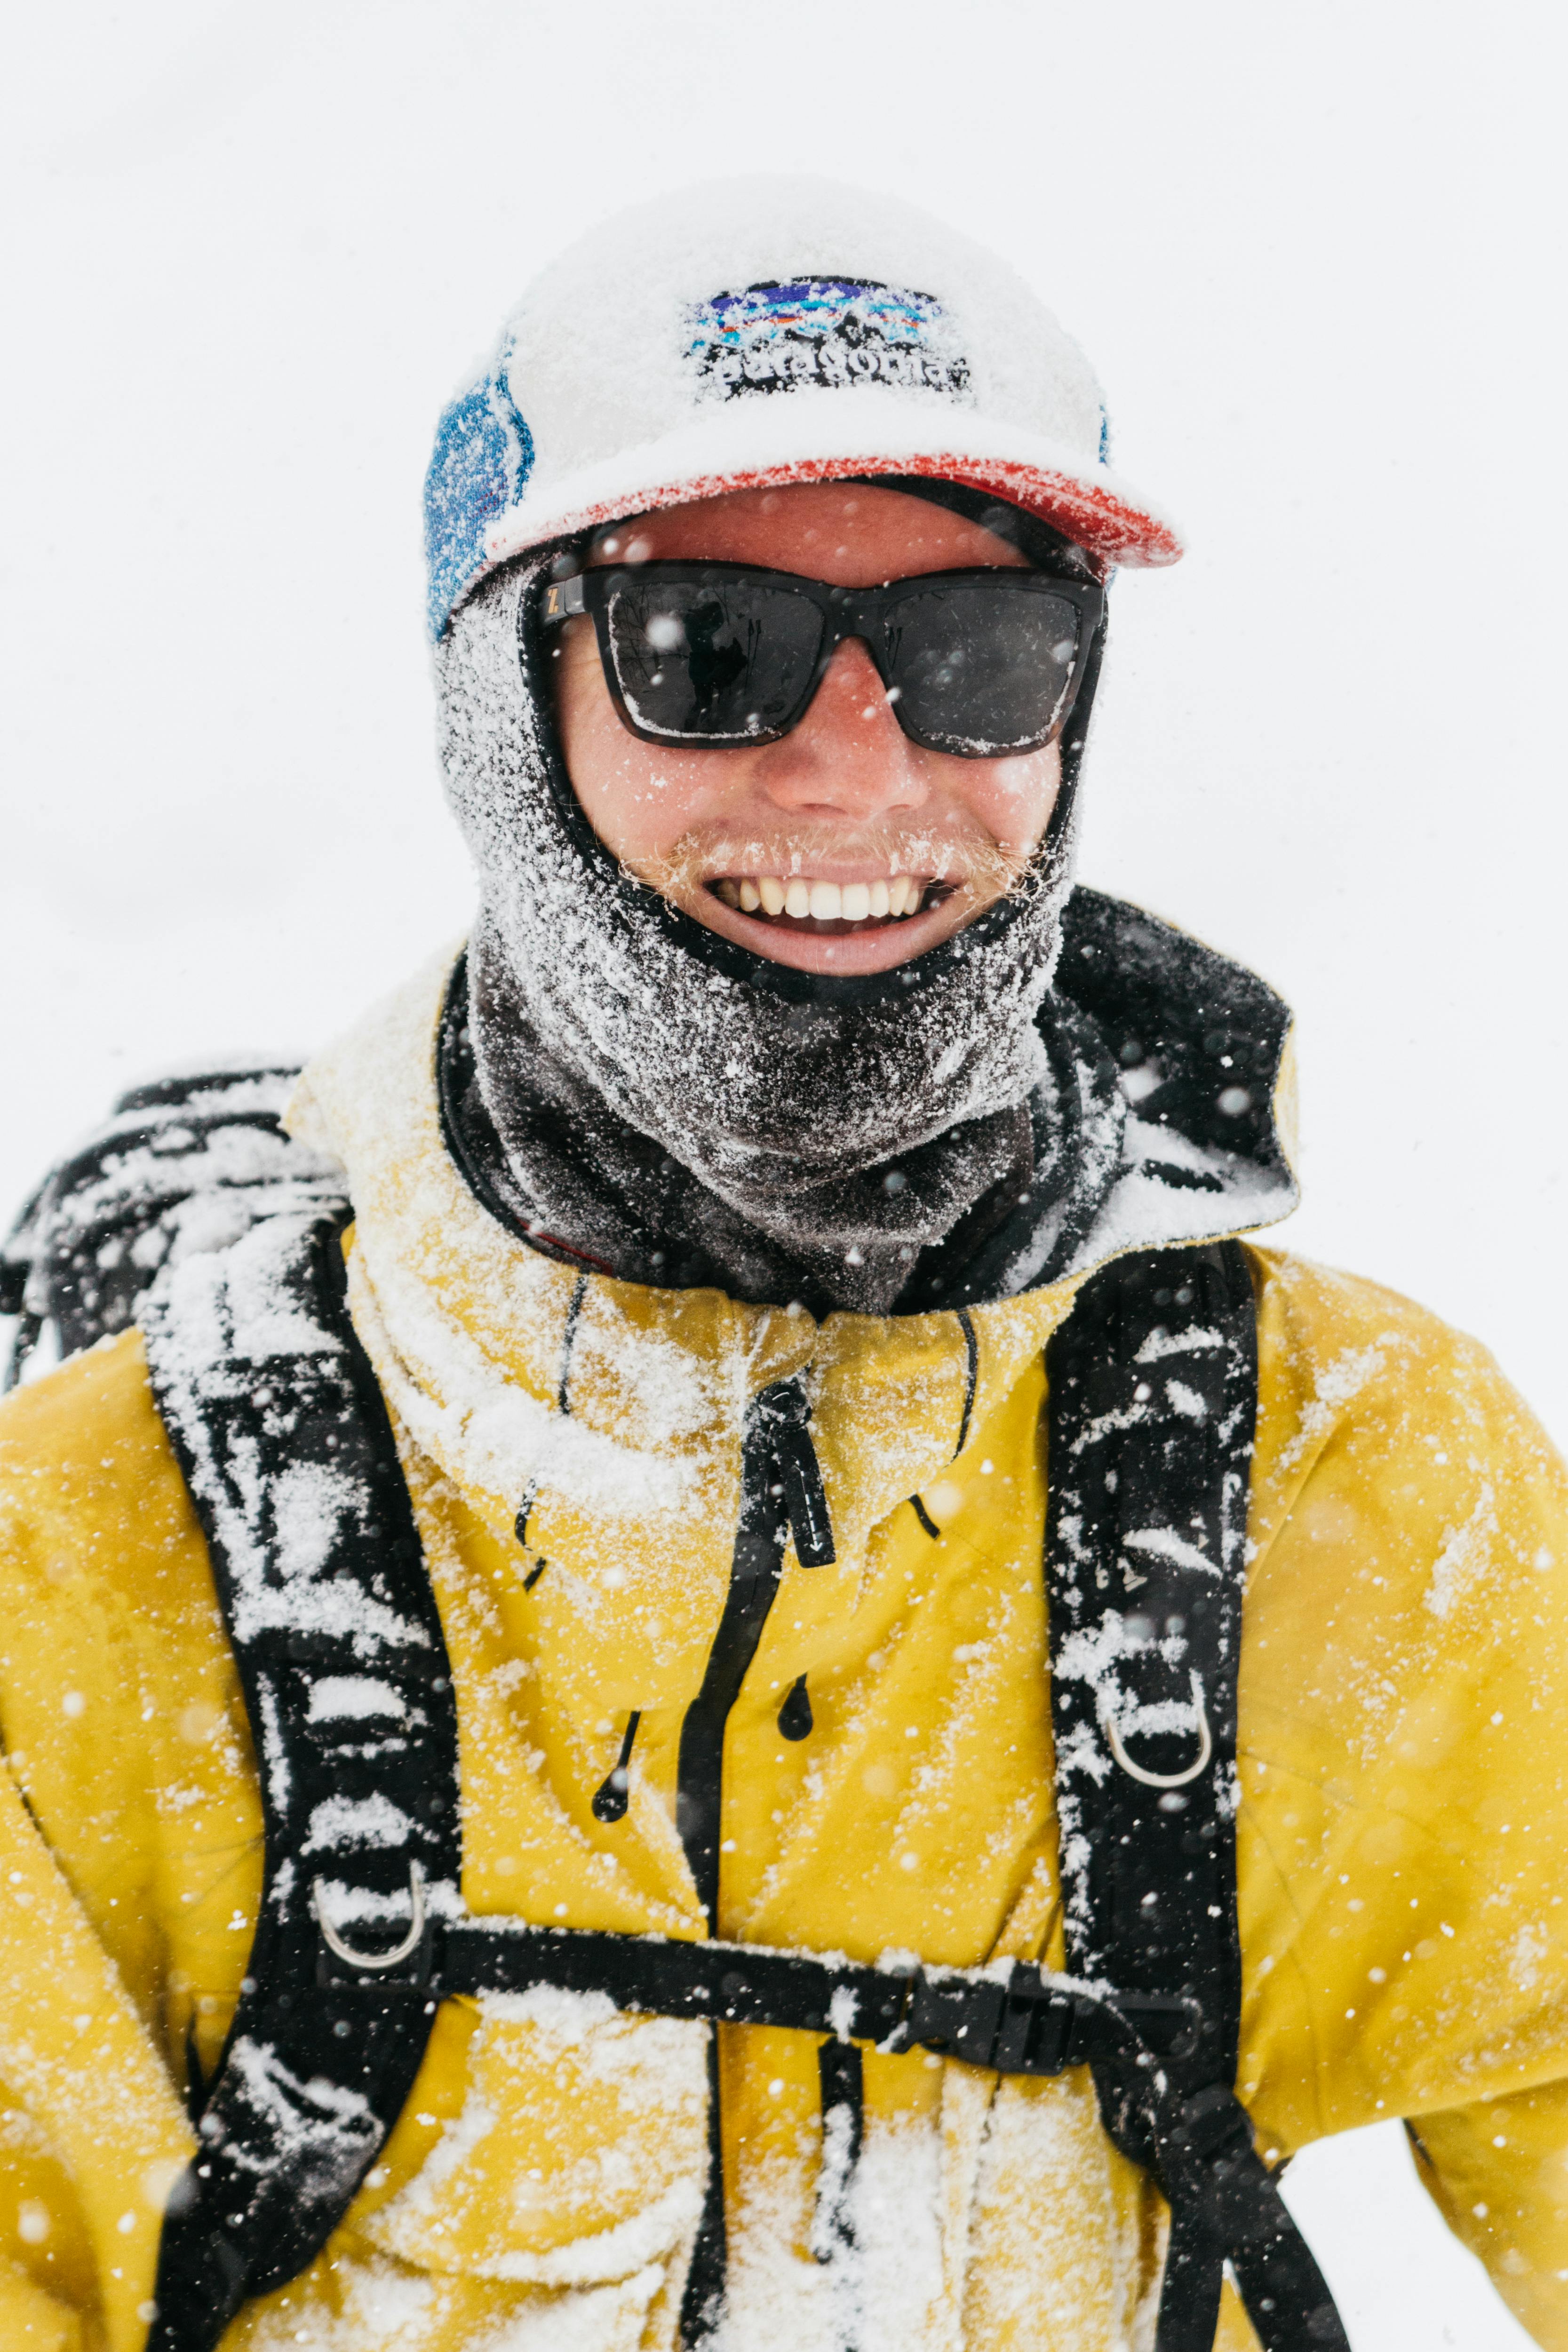 Man smiling in ski gear full in snow in Niseko